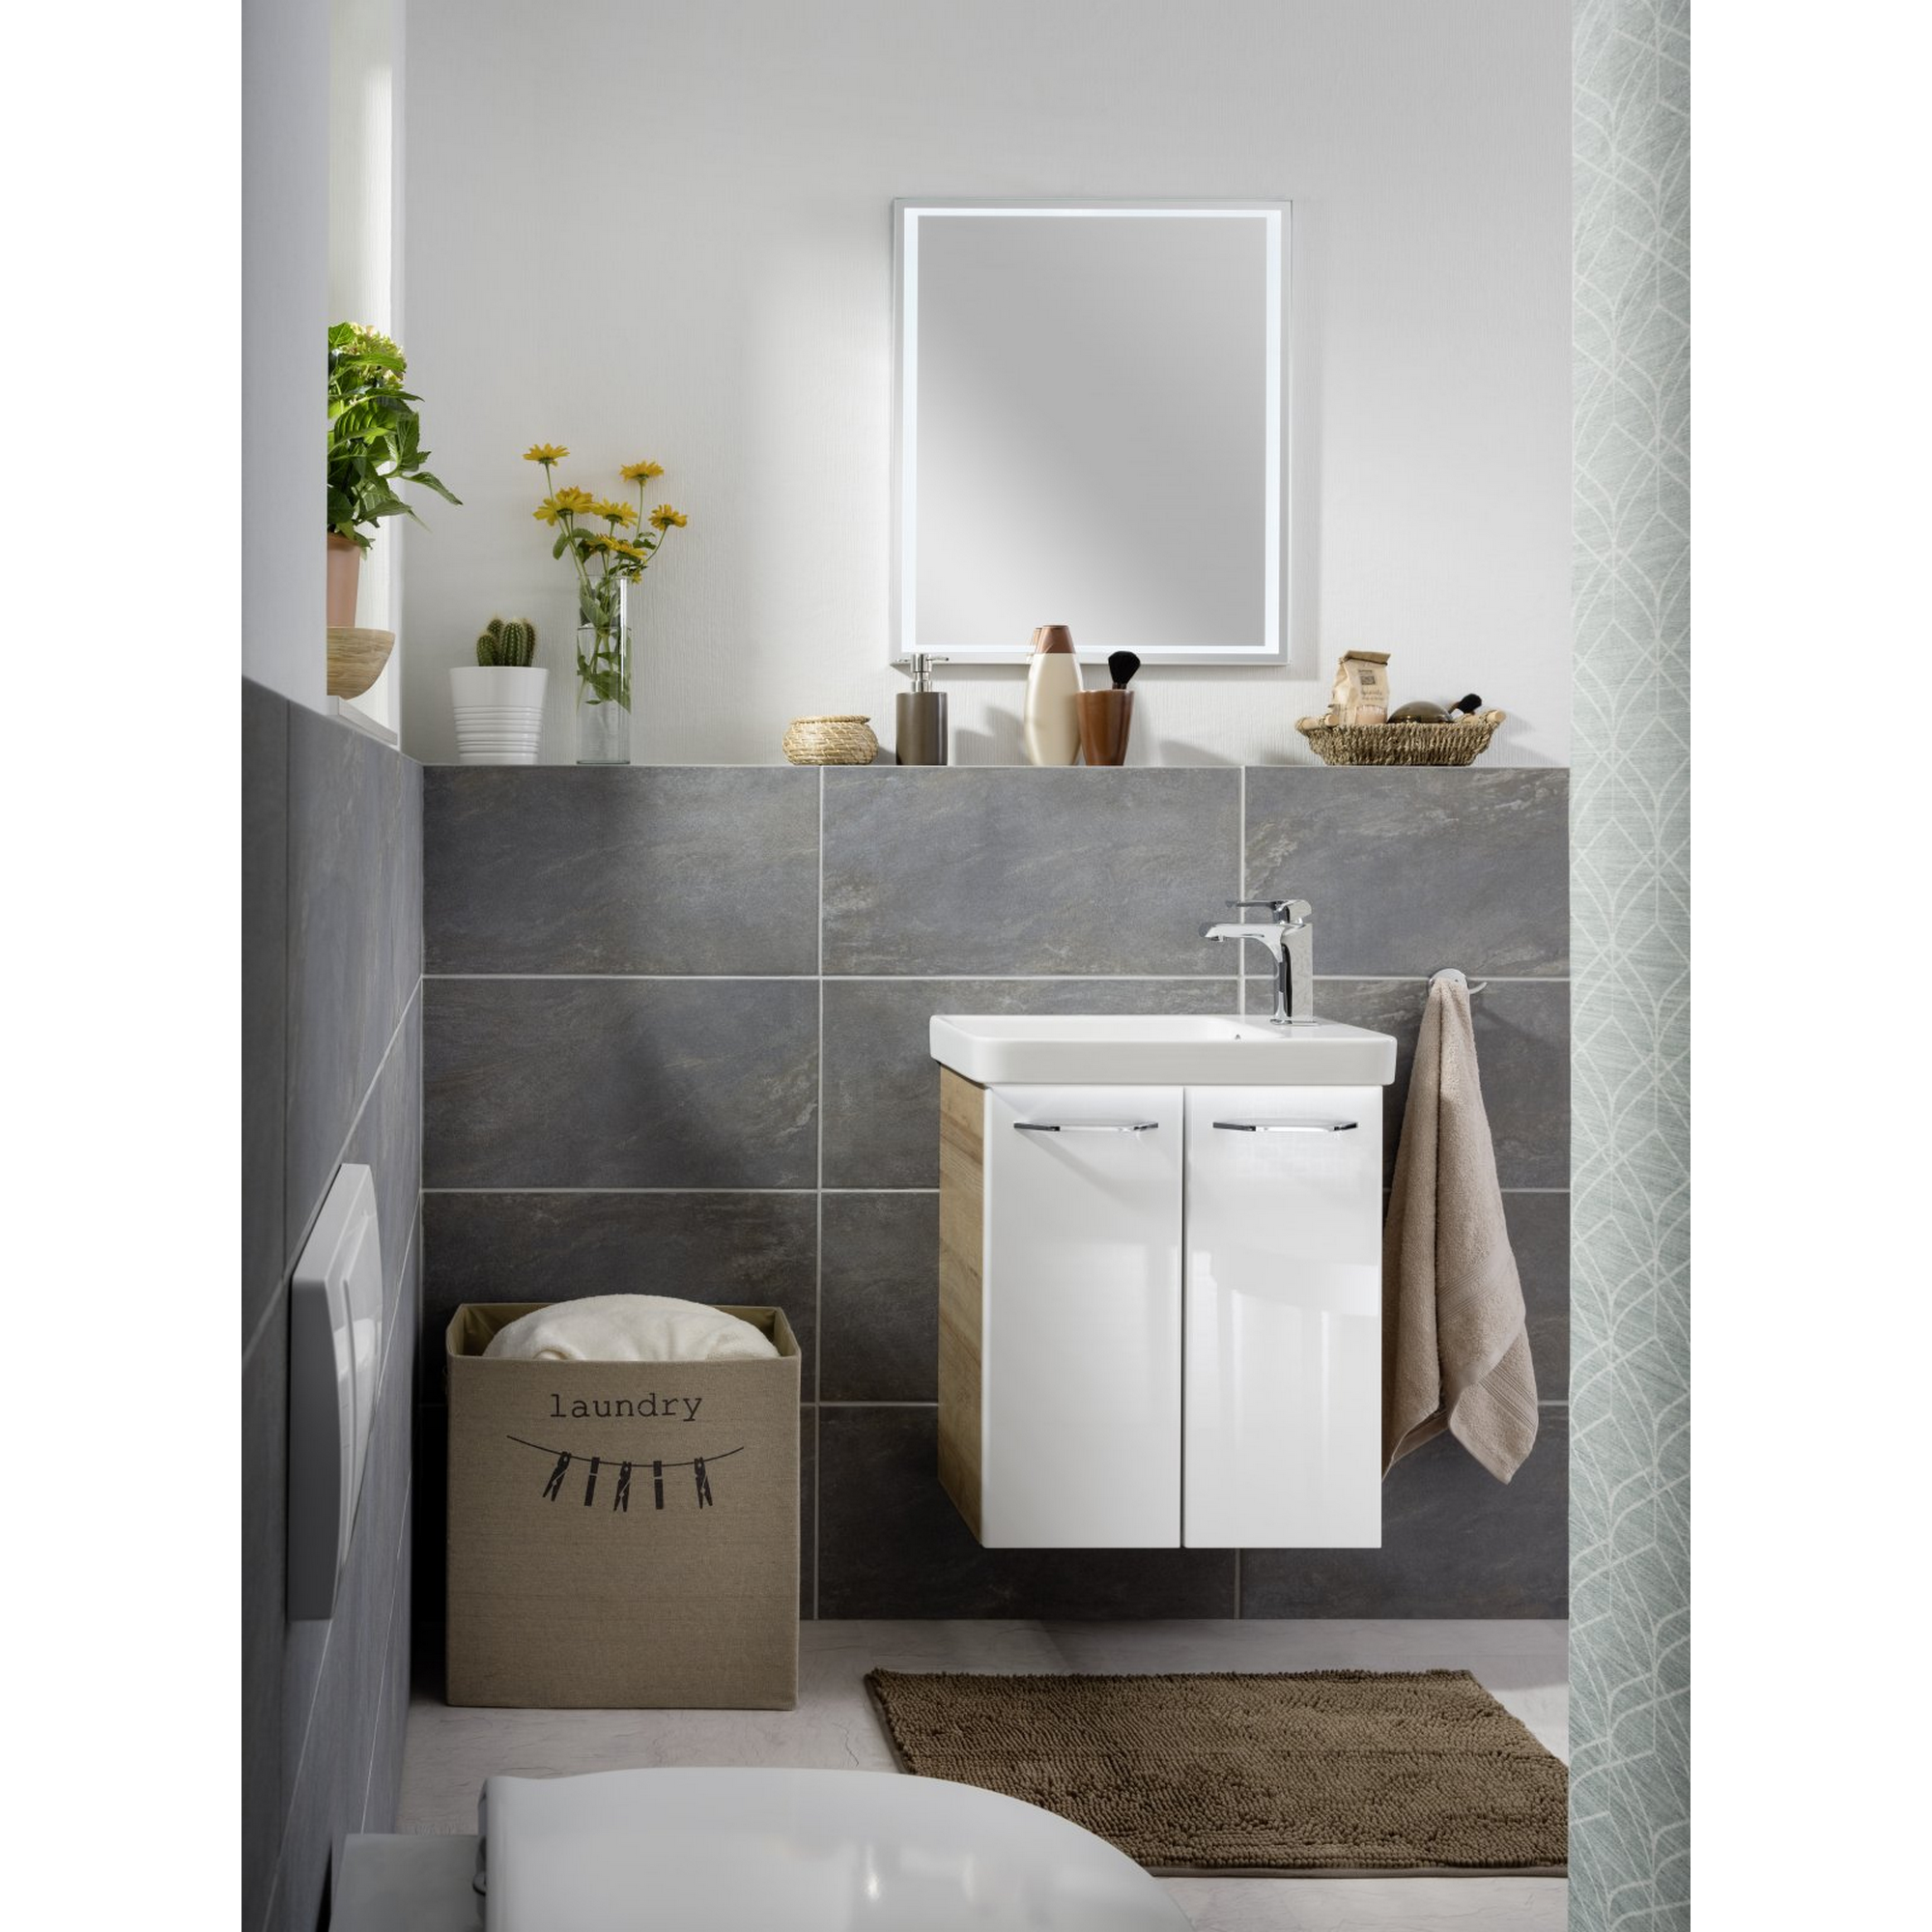 Waschtisch-Unterschrank 'Milano' weiß/Asteiche 52 x 61 x 27,5 cm + product picture